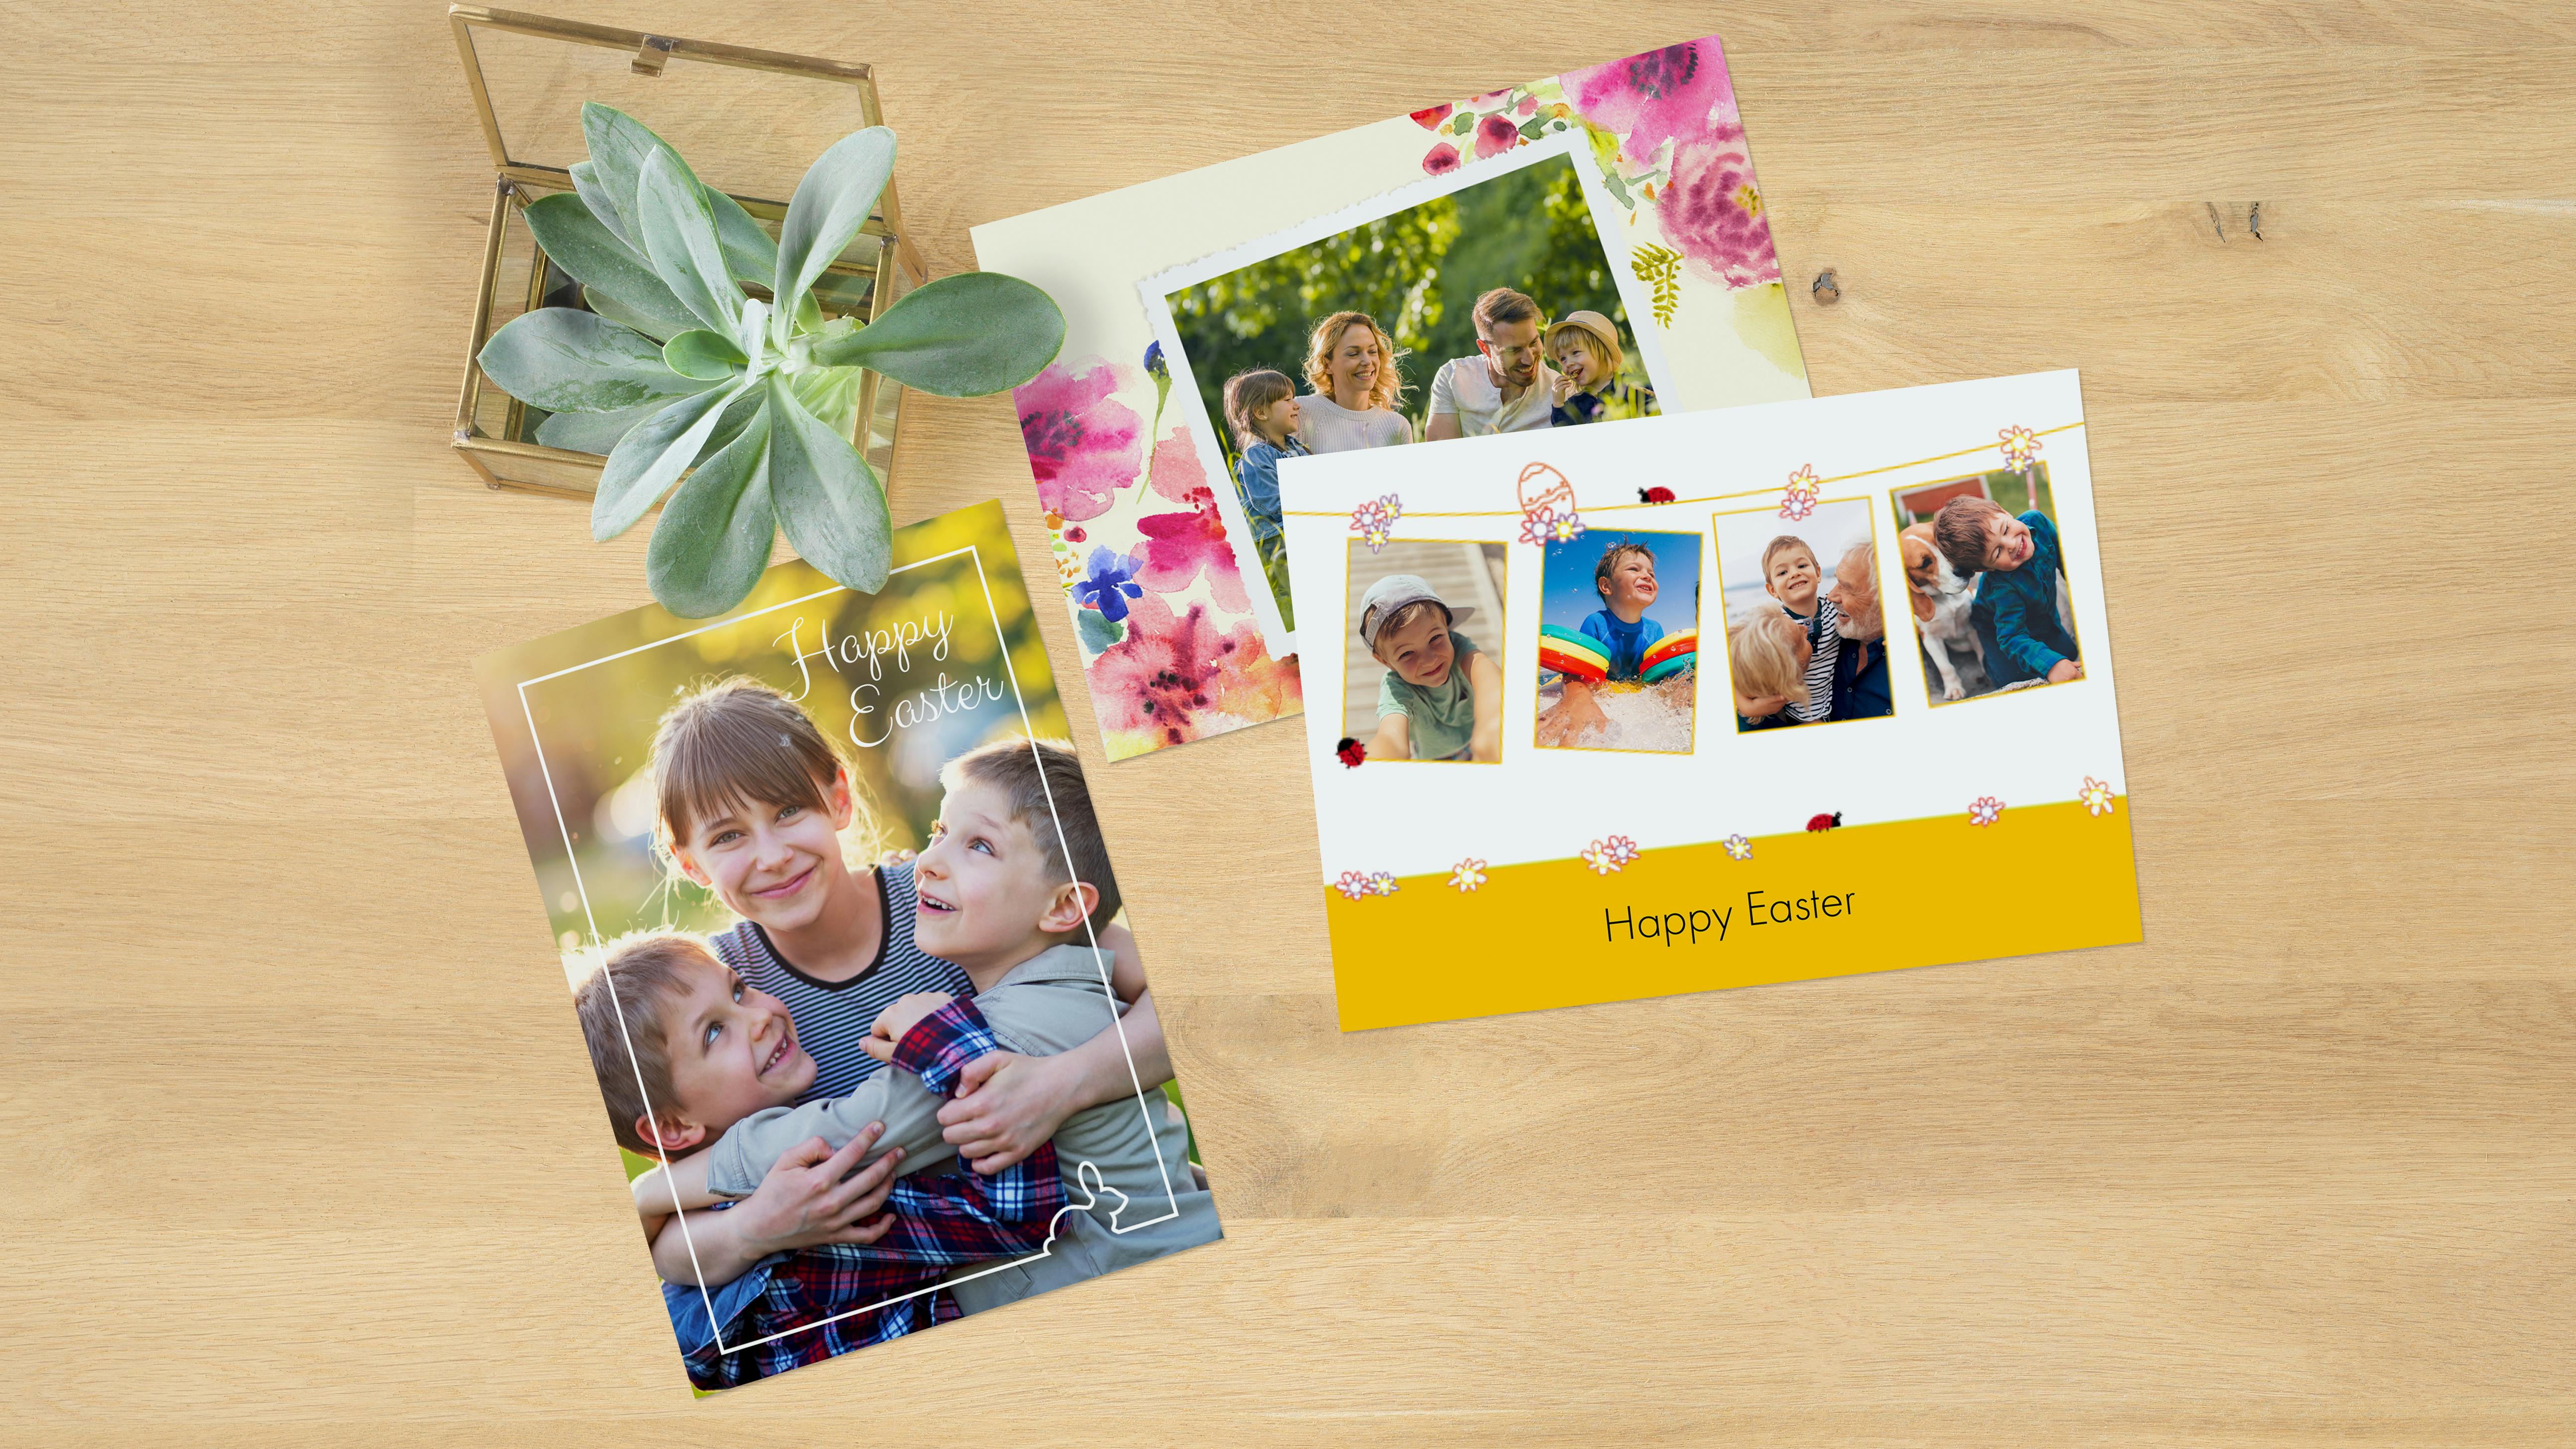 Drie verschillende fotowenskaarten met lente- en pasen foto's